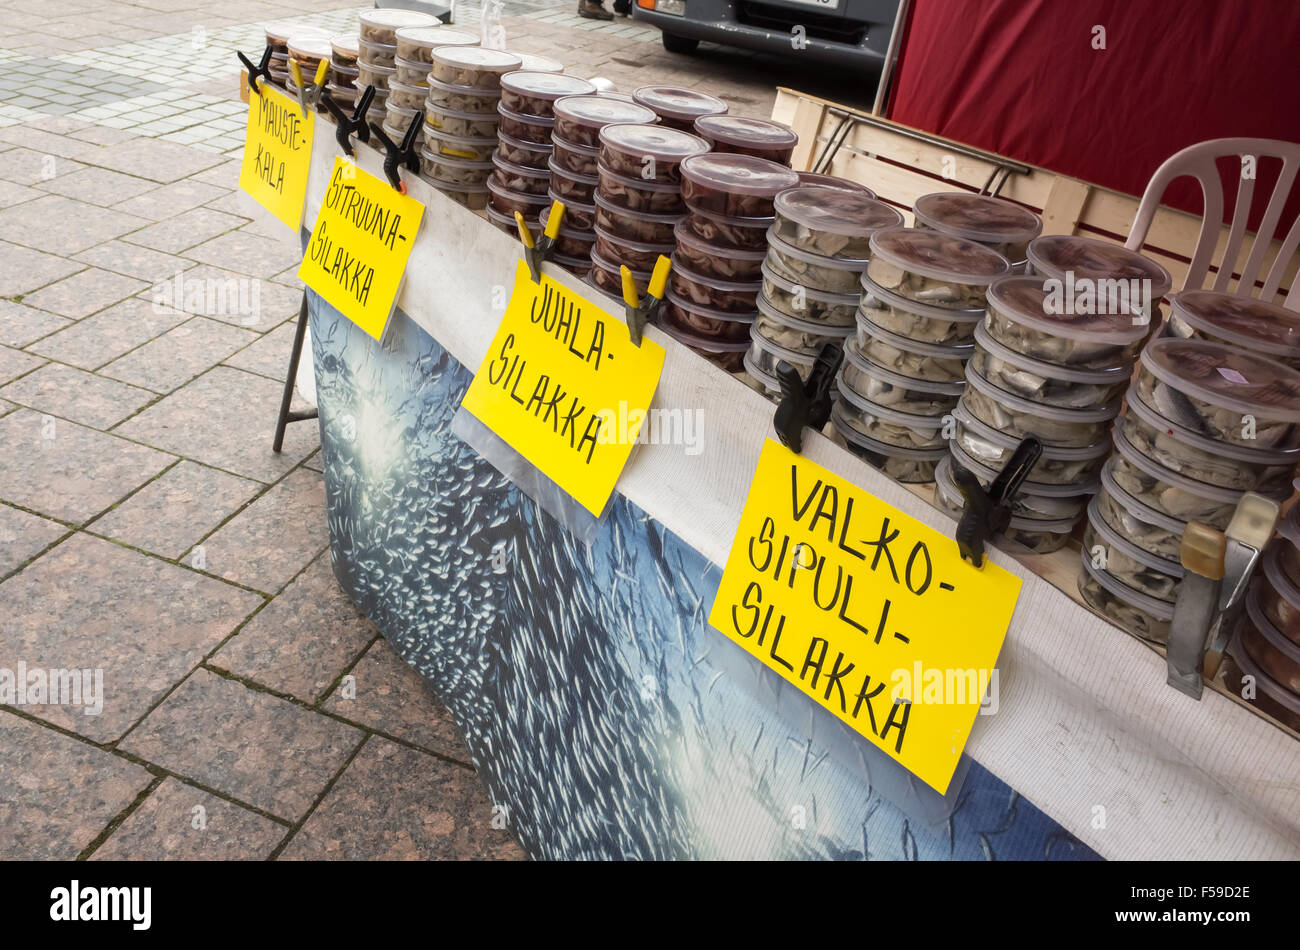 Imatra, Finlande - le 25 octobre 2015 : conserves de poissons dans des bidons en plastique jaune avec des étiquettes de prix, traditionnelle finlandaise à vendre Banque D'Images